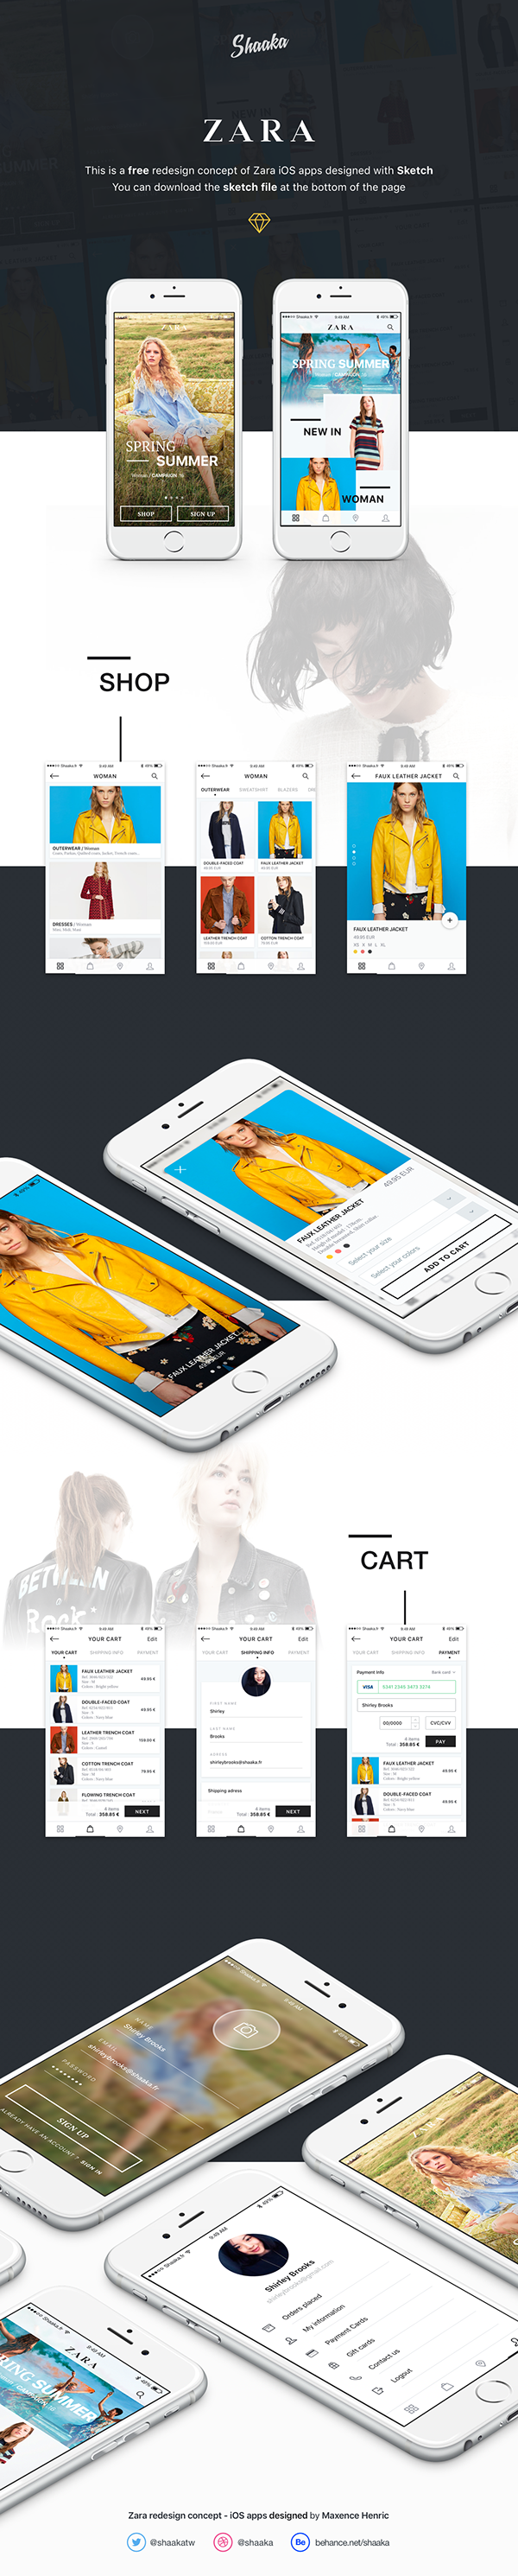 [Free] Zara redesign concept - UI/UX Design